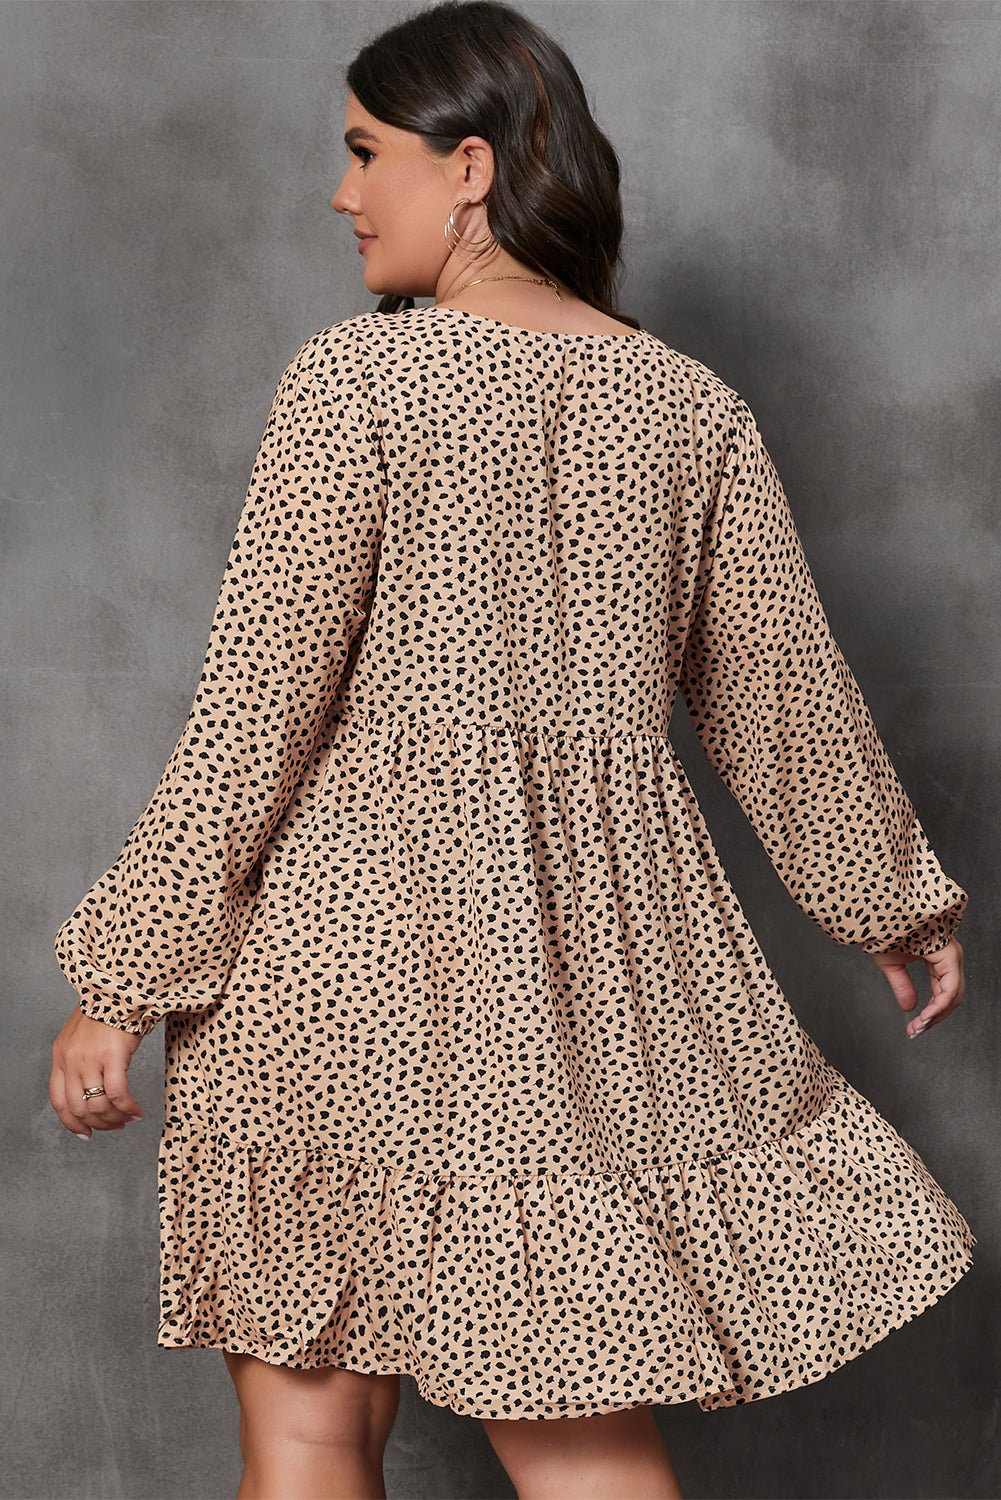 Braunes, langärmeliges, gestuftes Kleid mit Leopardenmuster und großen Größen